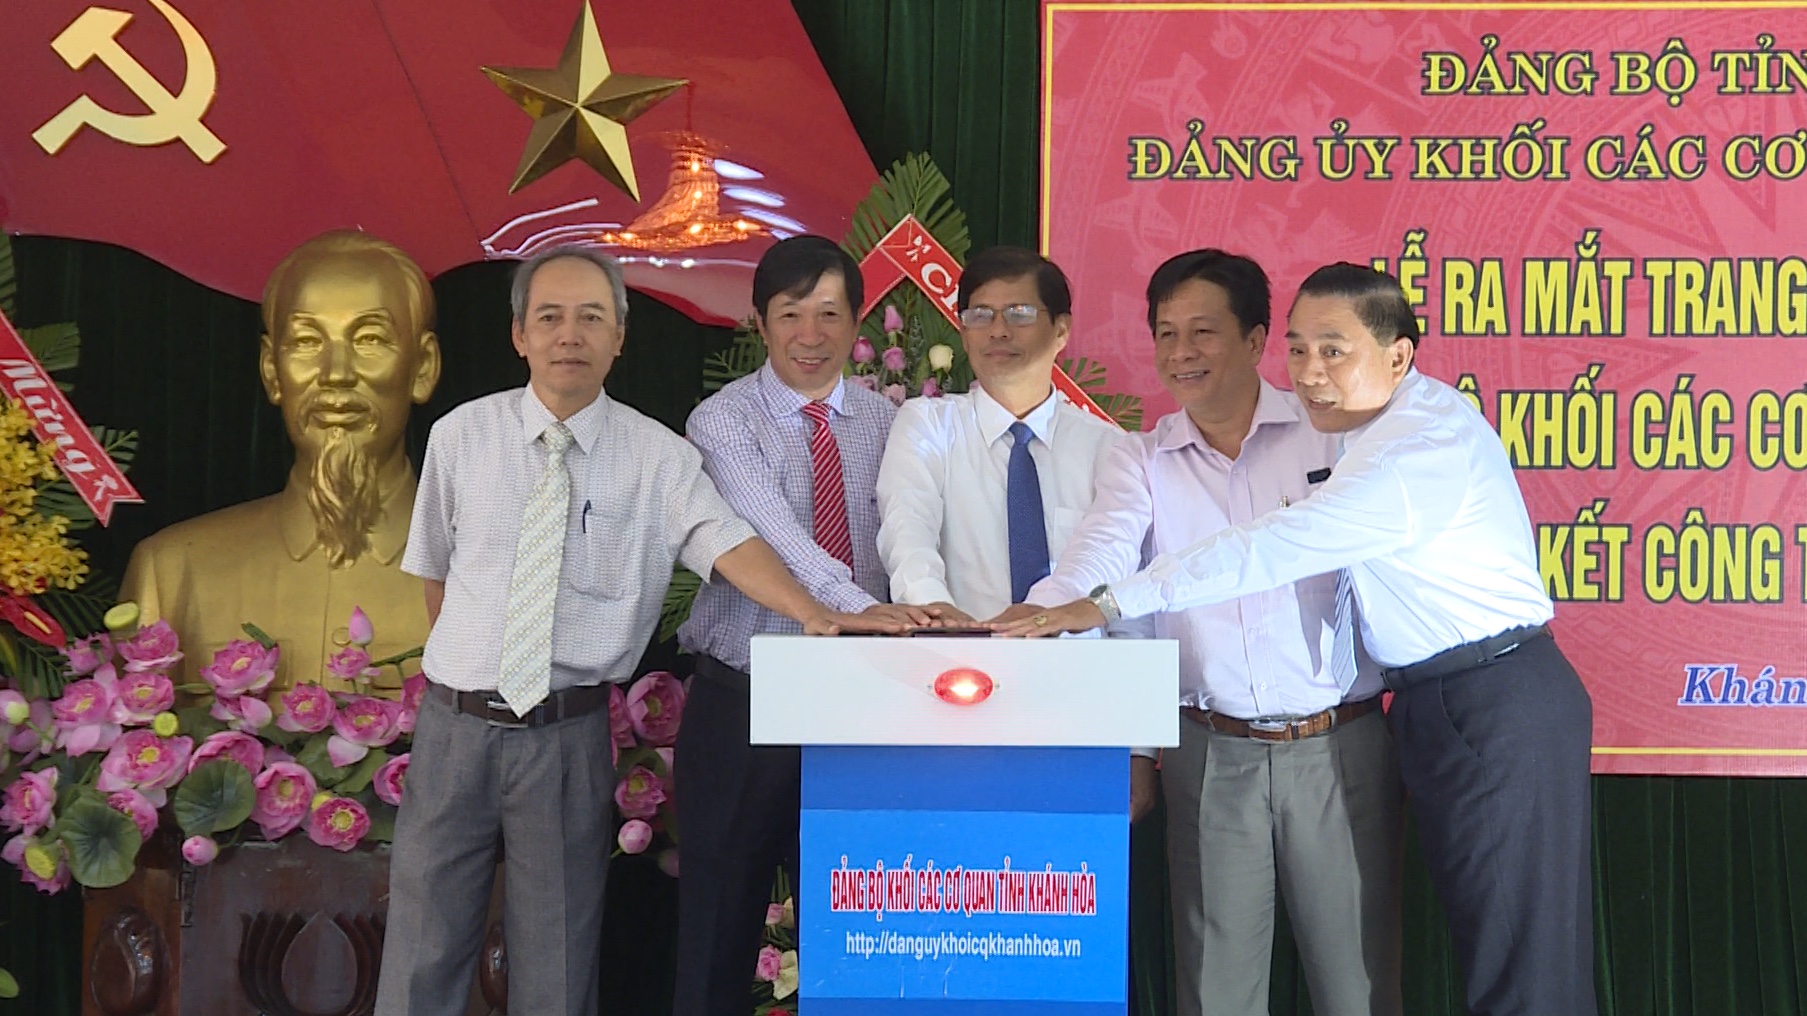 Đảng ủy Khối các cơ quan tỉnh Khánh Hòa: Ra mắt Trang thông tin điện tử